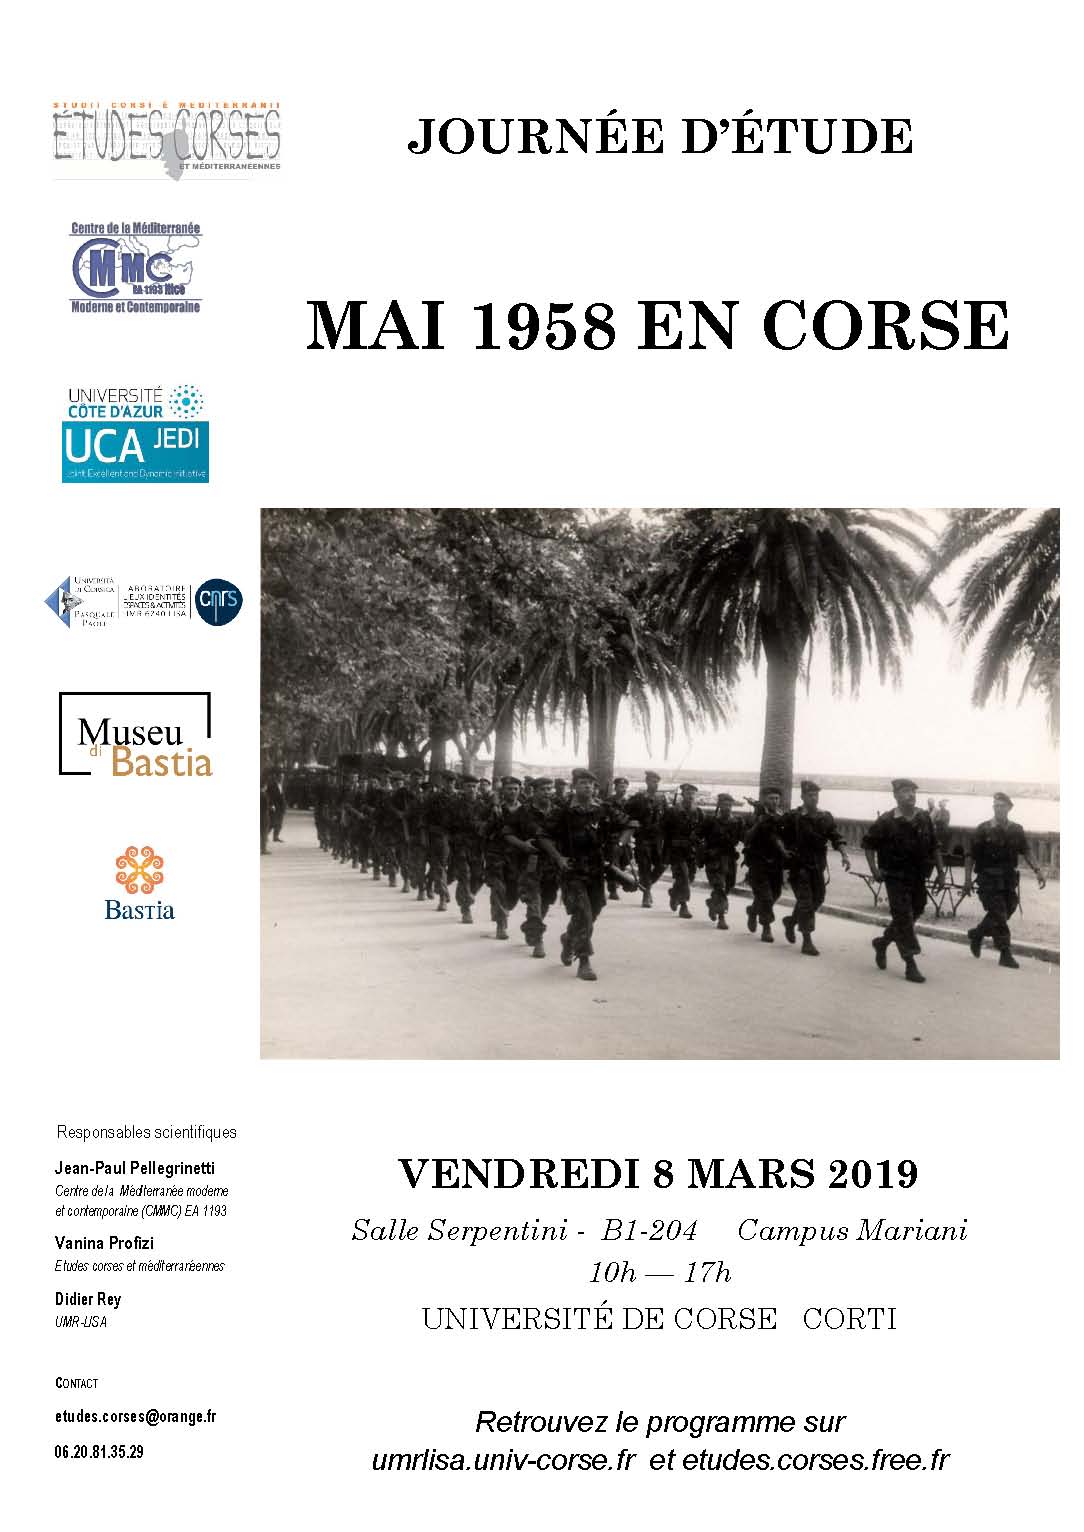 Journée d’études « Mai 1958 en Corse »